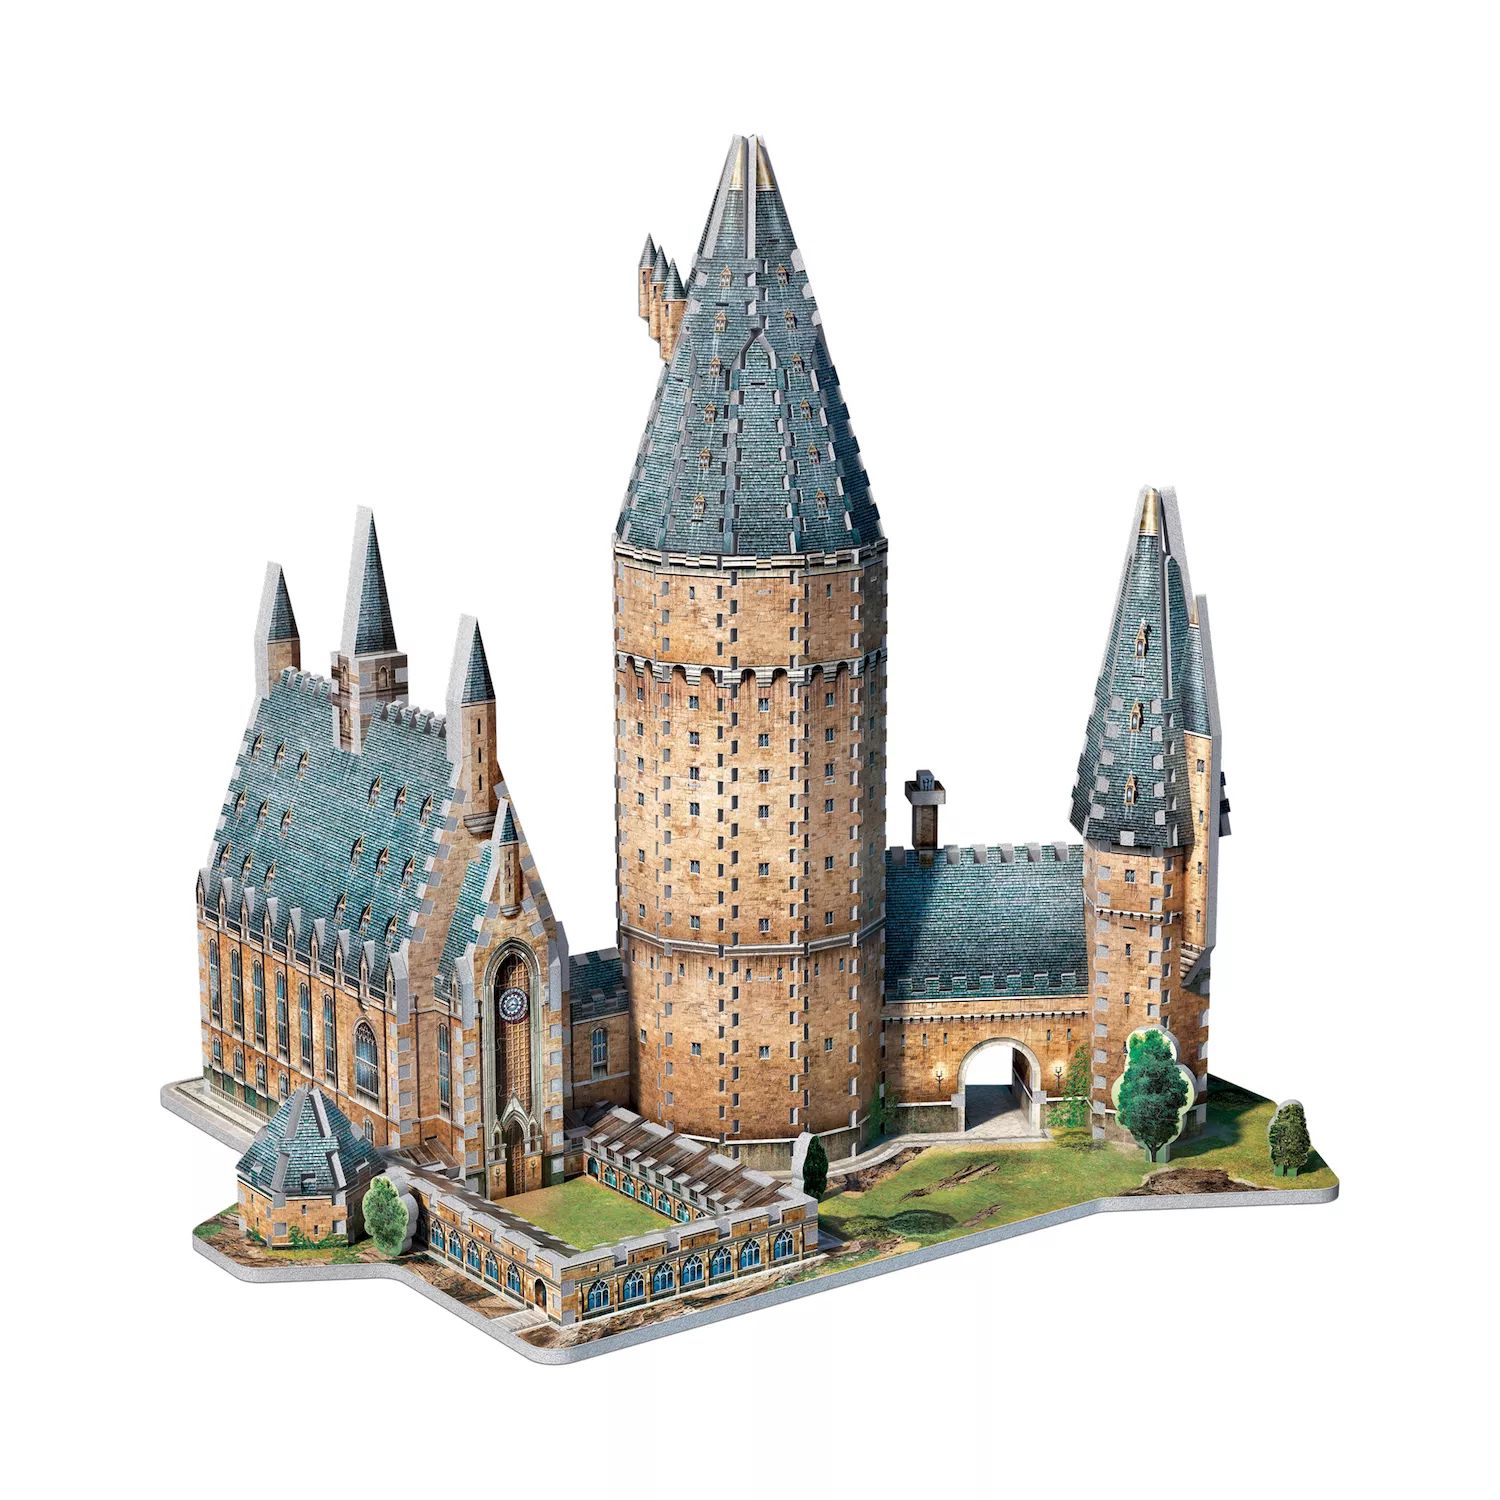 Коллекция Гарри Поттера 850 шт. 3D-пазл «Большой зал Хогвартса» от Wrebbit Wrebbit большой зал хогвартса™